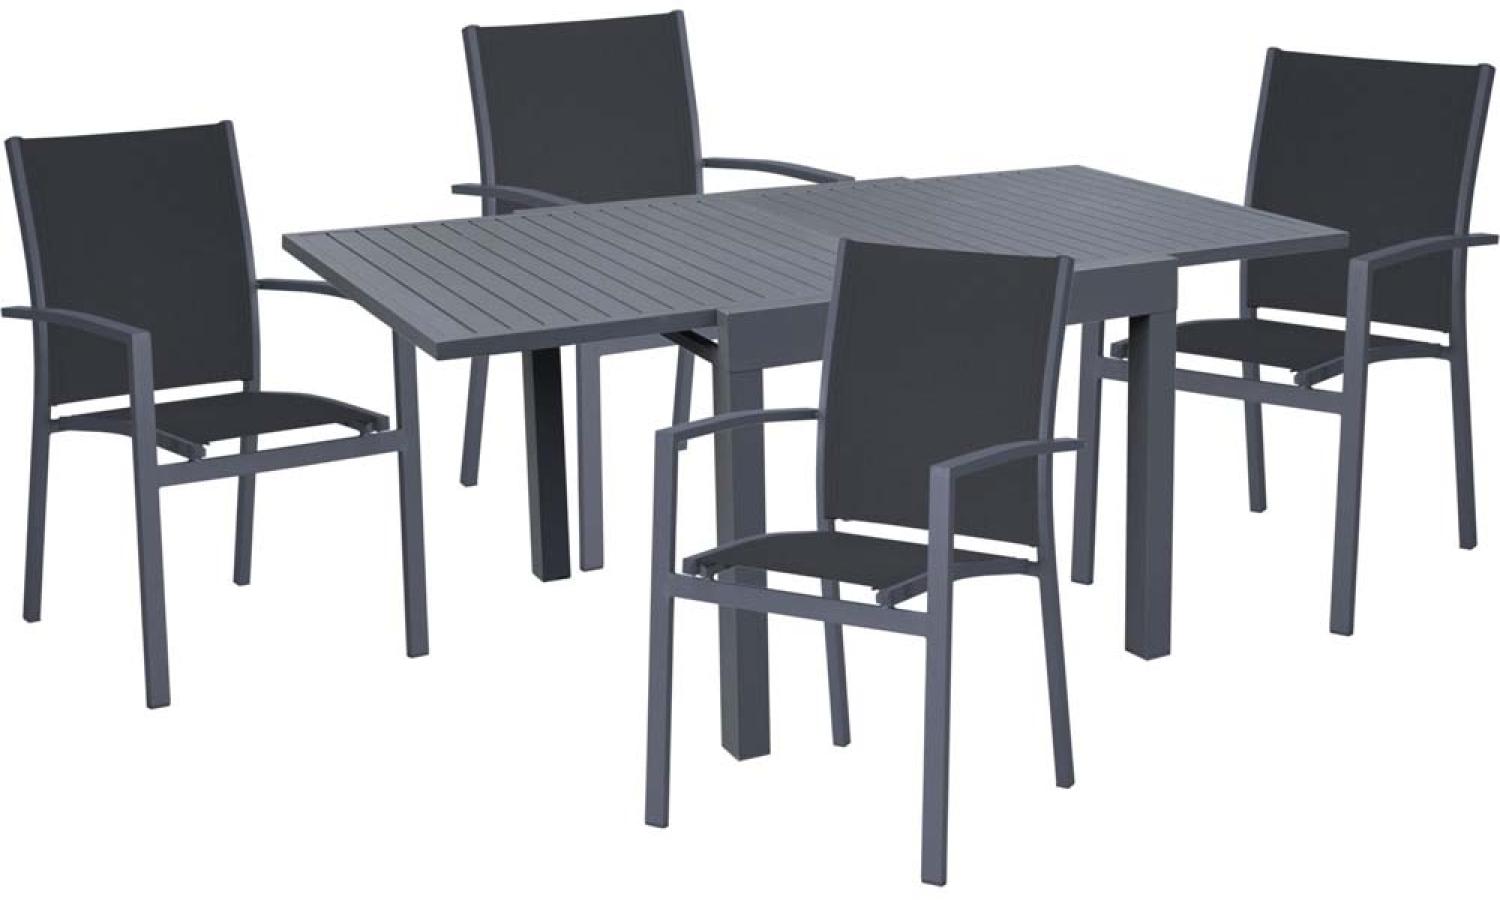 Tischgruppe ELENA, 5 teilig, Aluminium, dunkelgrau Bild 1